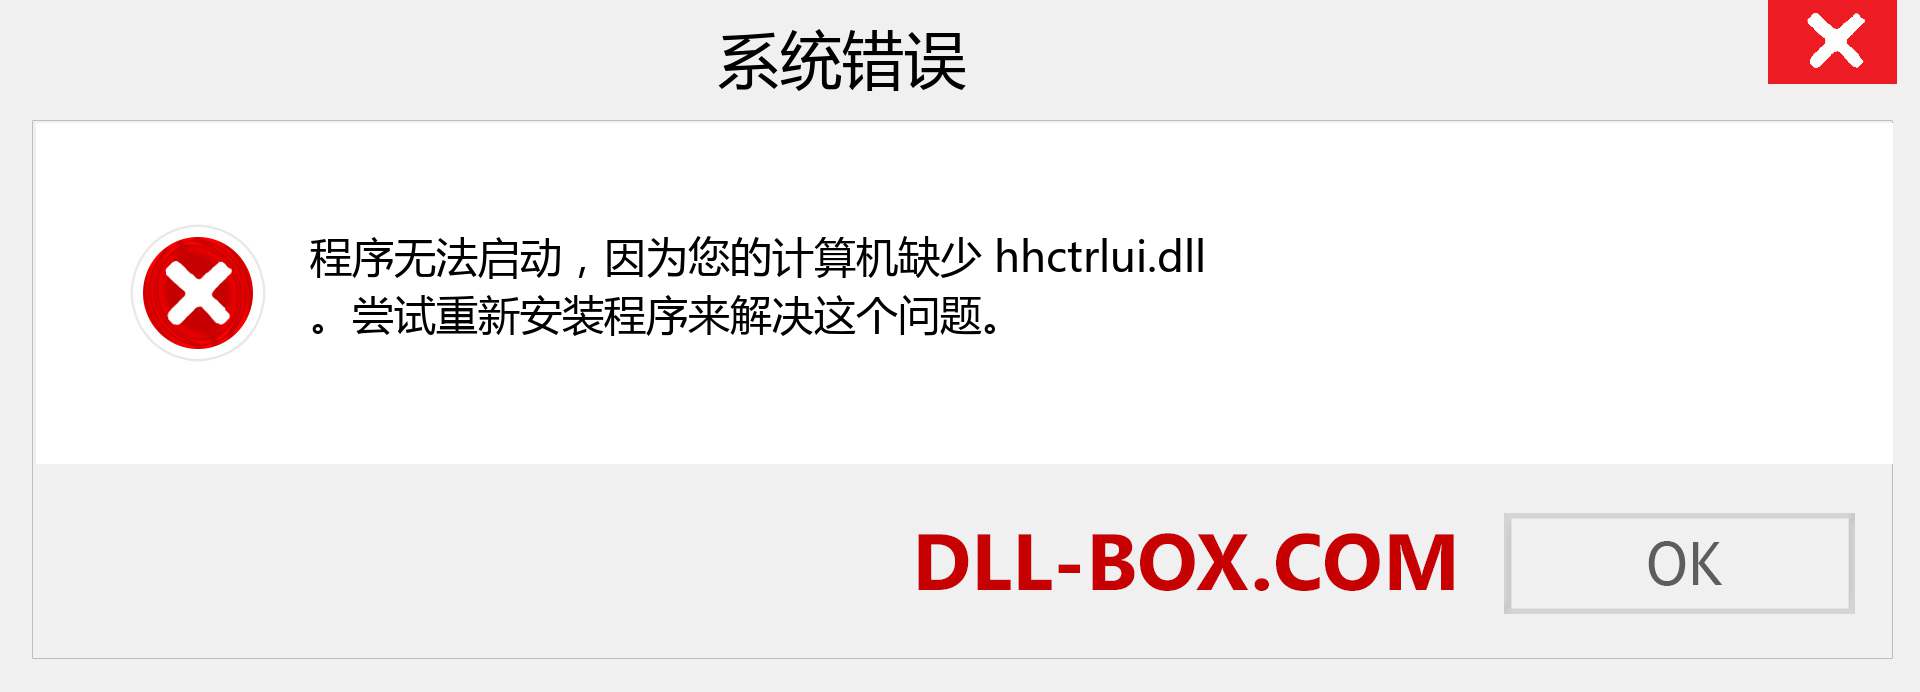 hhctrlui.dll 文件丢失？。 适用于 Windows 7、8、10 的下载 - 修复 Windows、照片、图像上的 hhctrlui dll 丢失错误